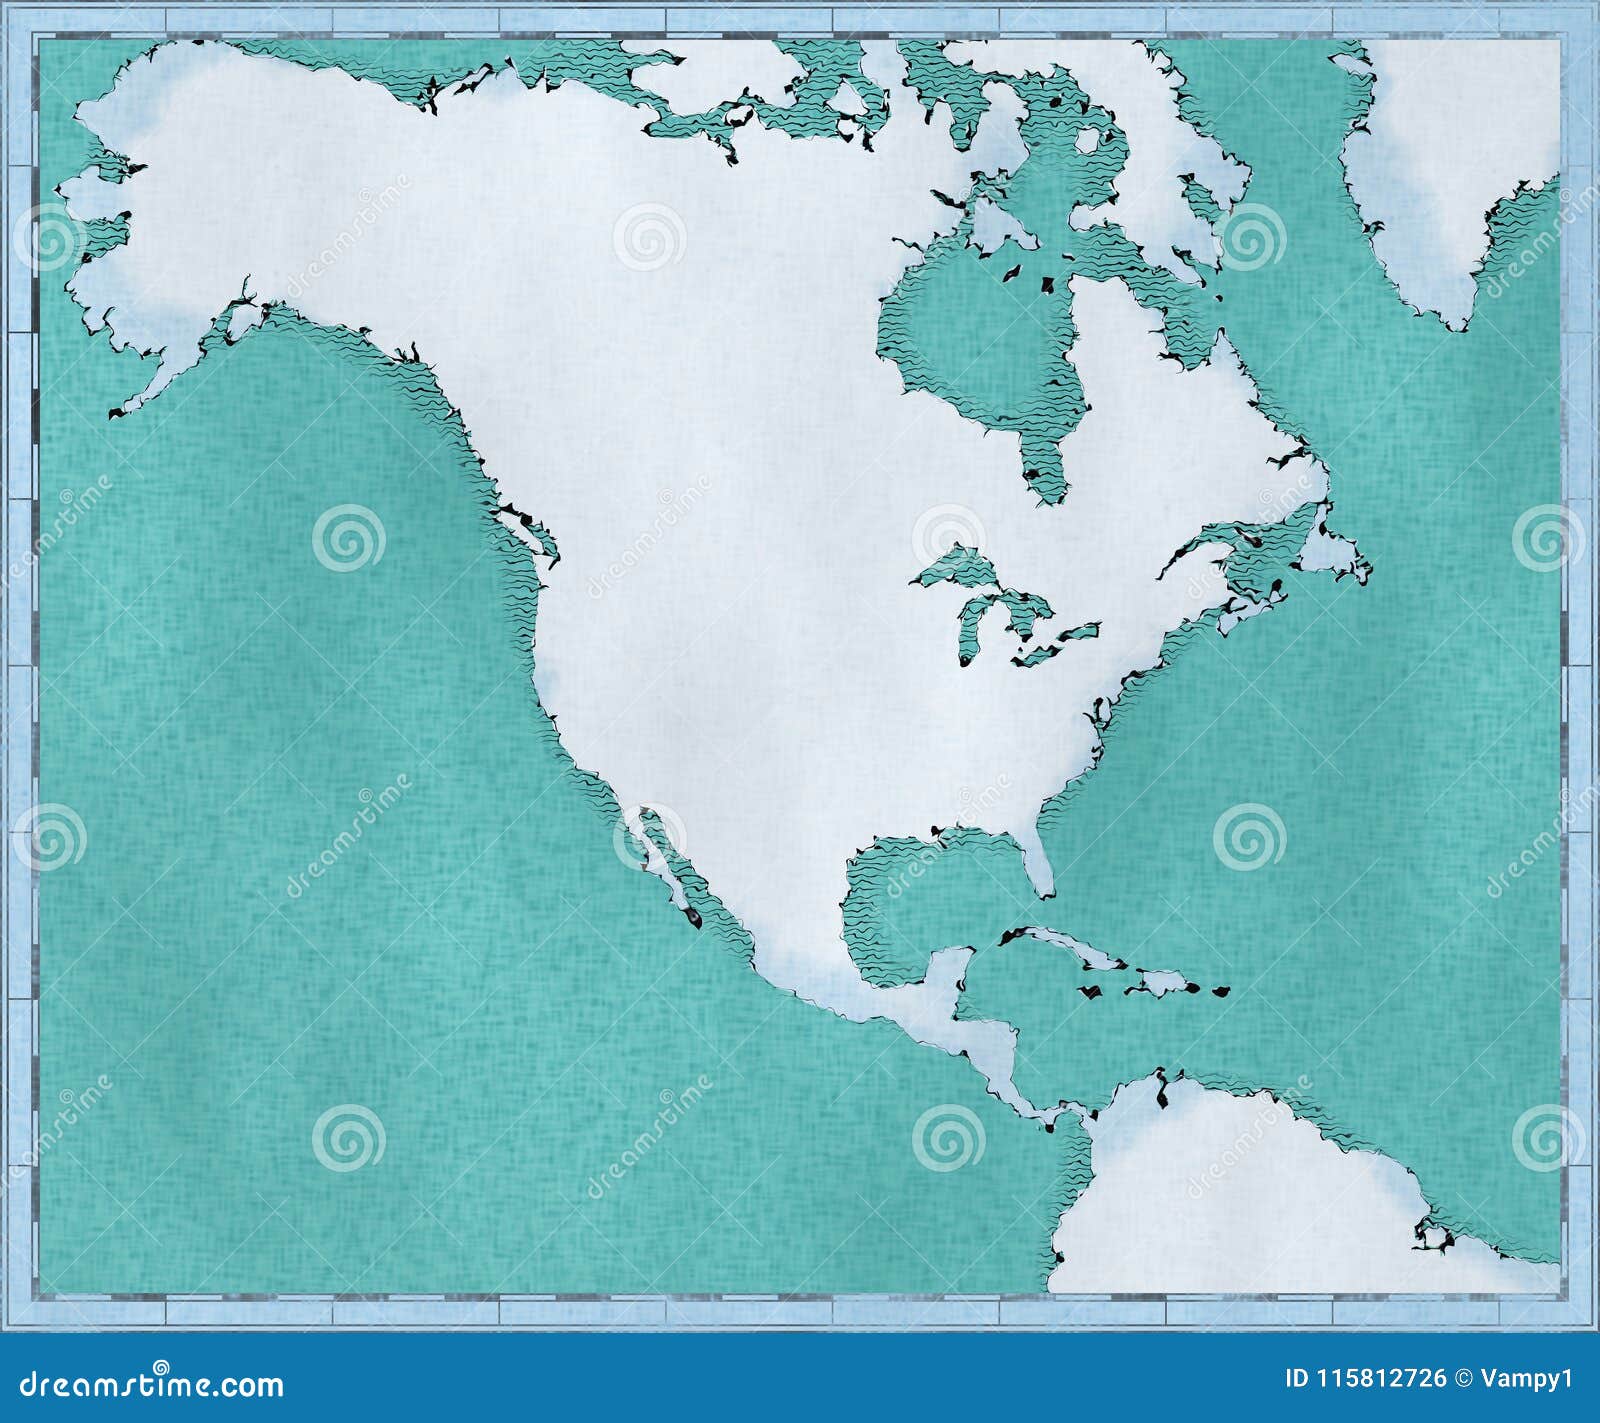 Карта Северной Америки, нарисованных проиллюстрированных ходов щетки, географической карты, физики Картоведение, географический атлас как обои моря предпосылки голубые слишком полезные